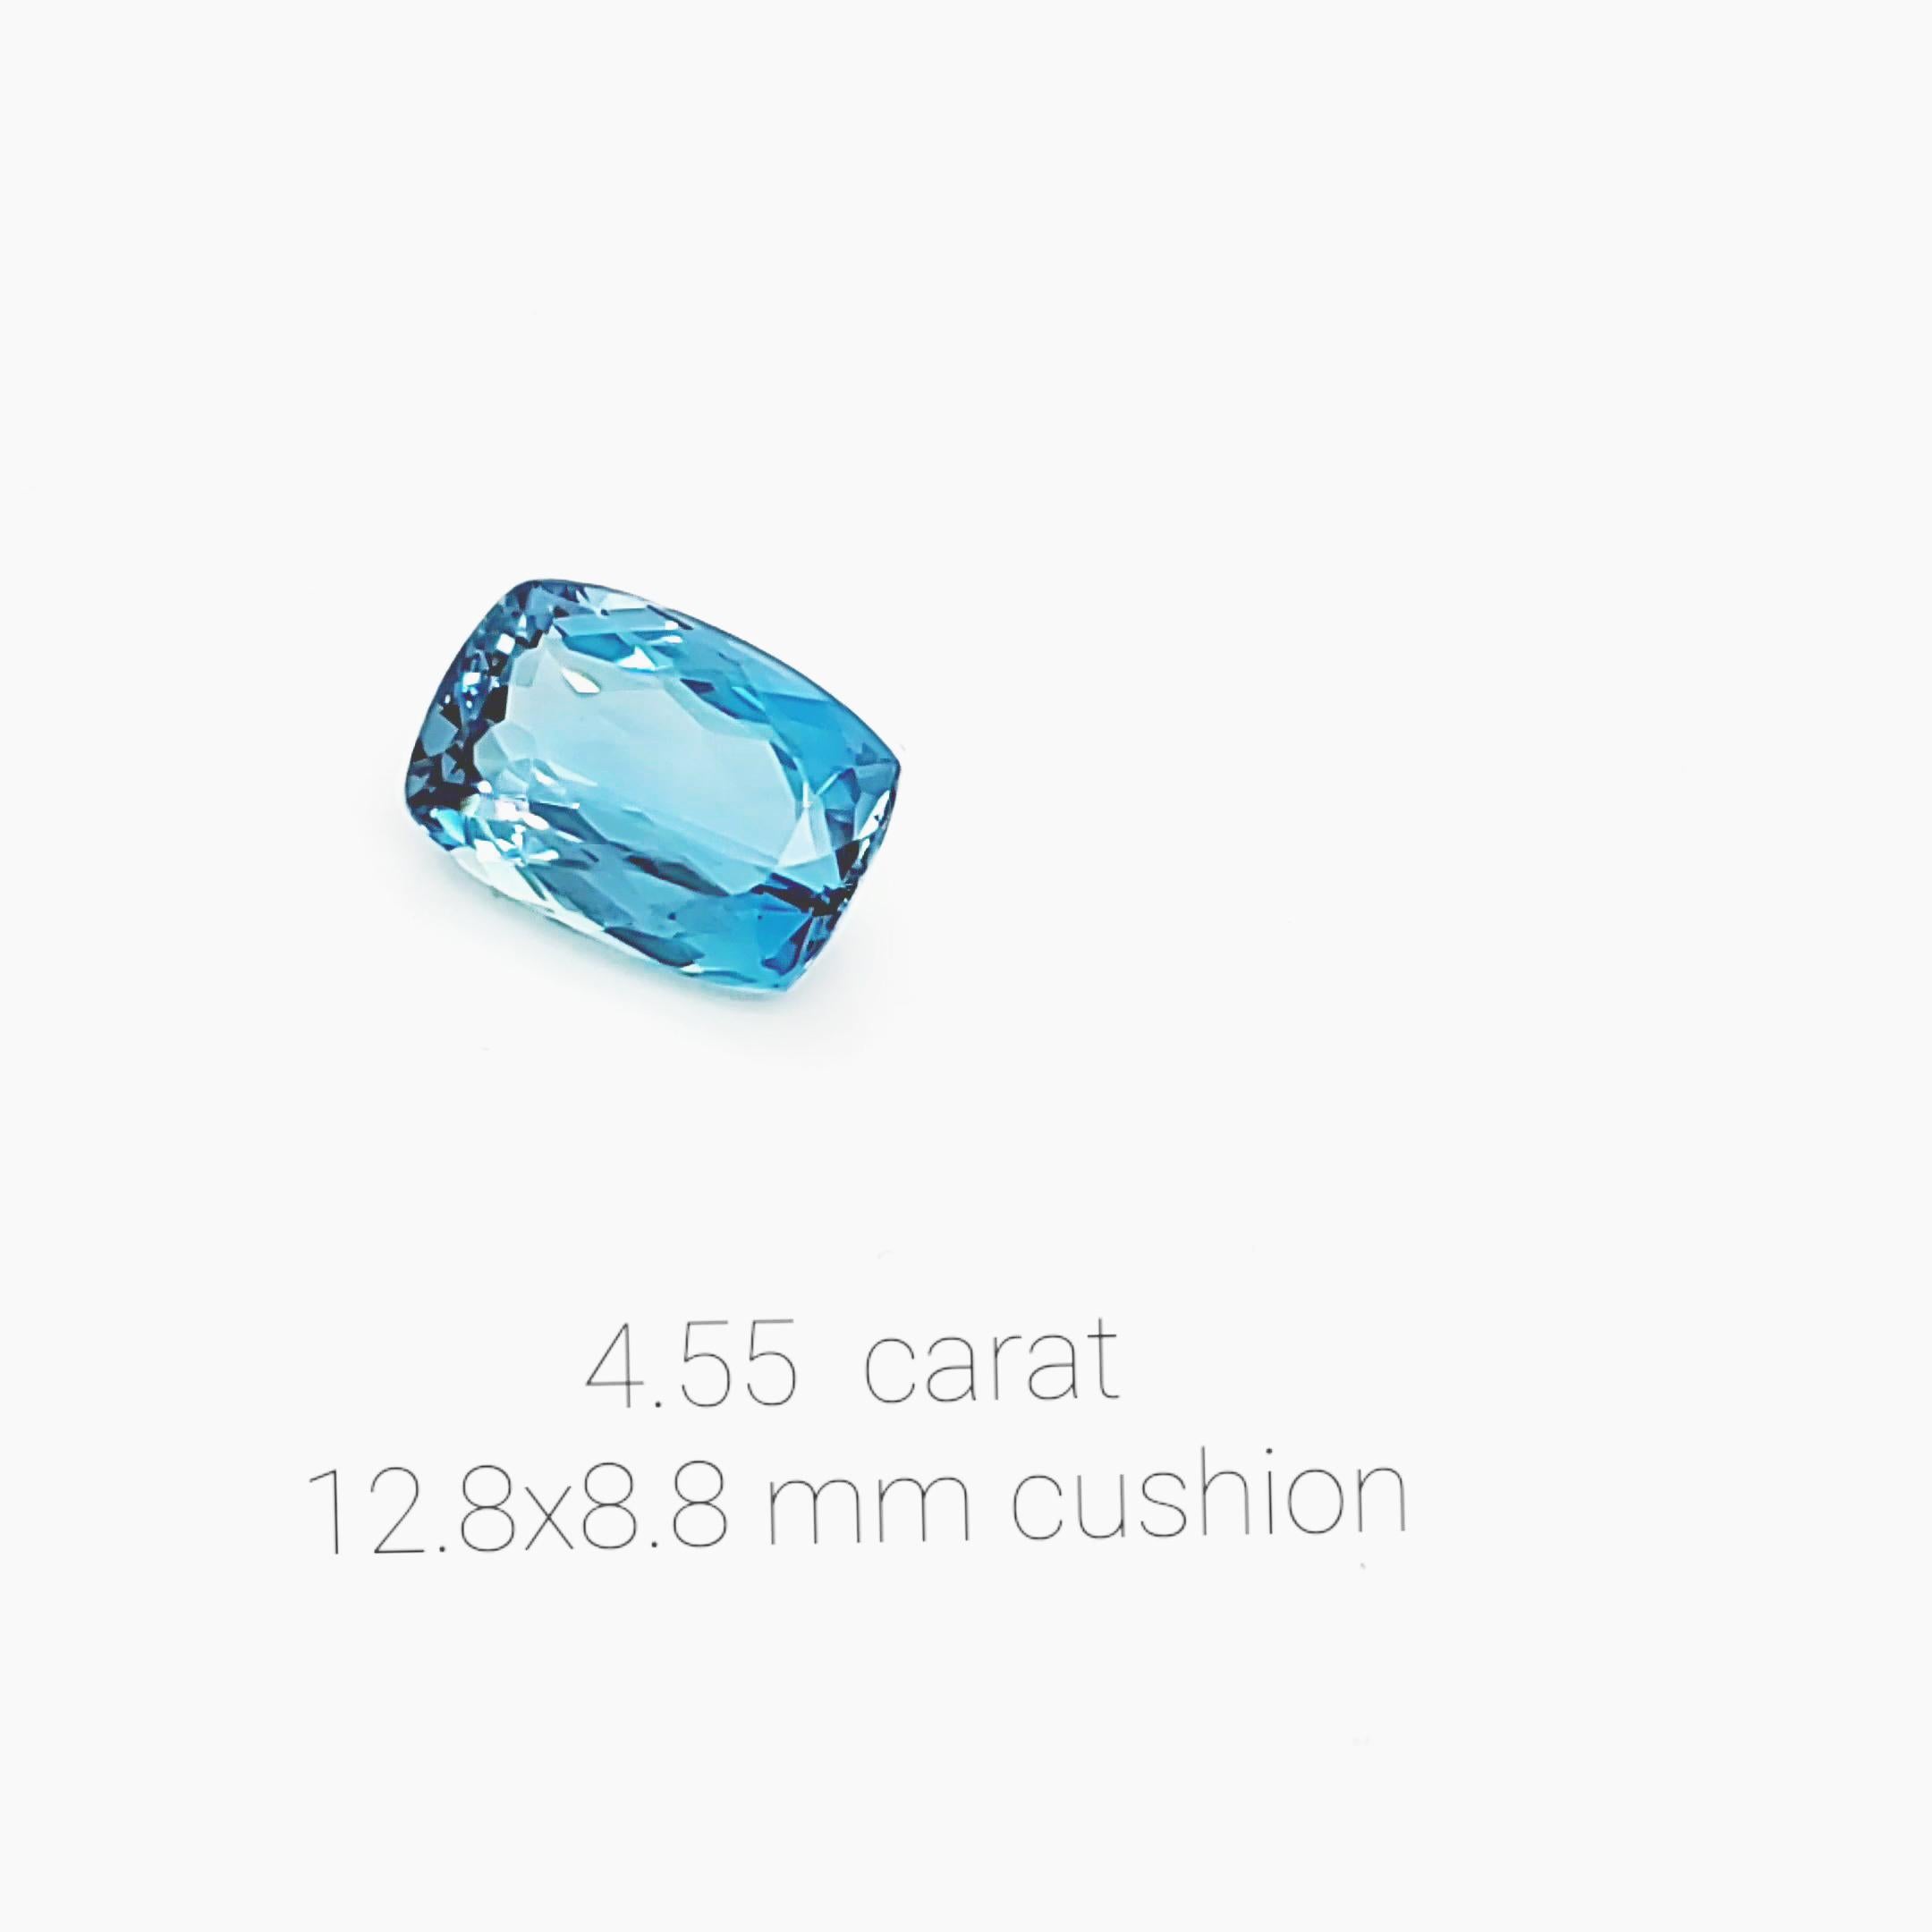 Aigue-marine coussin bleue naturelle de 4,55 carats, d'un bleu intense de grande qualité, minérale transparente sans inclusions, choix idéal pour les collectionneurs ou pour commander un bijou personnalisé et unique avec cette pierre.
Nous sommes